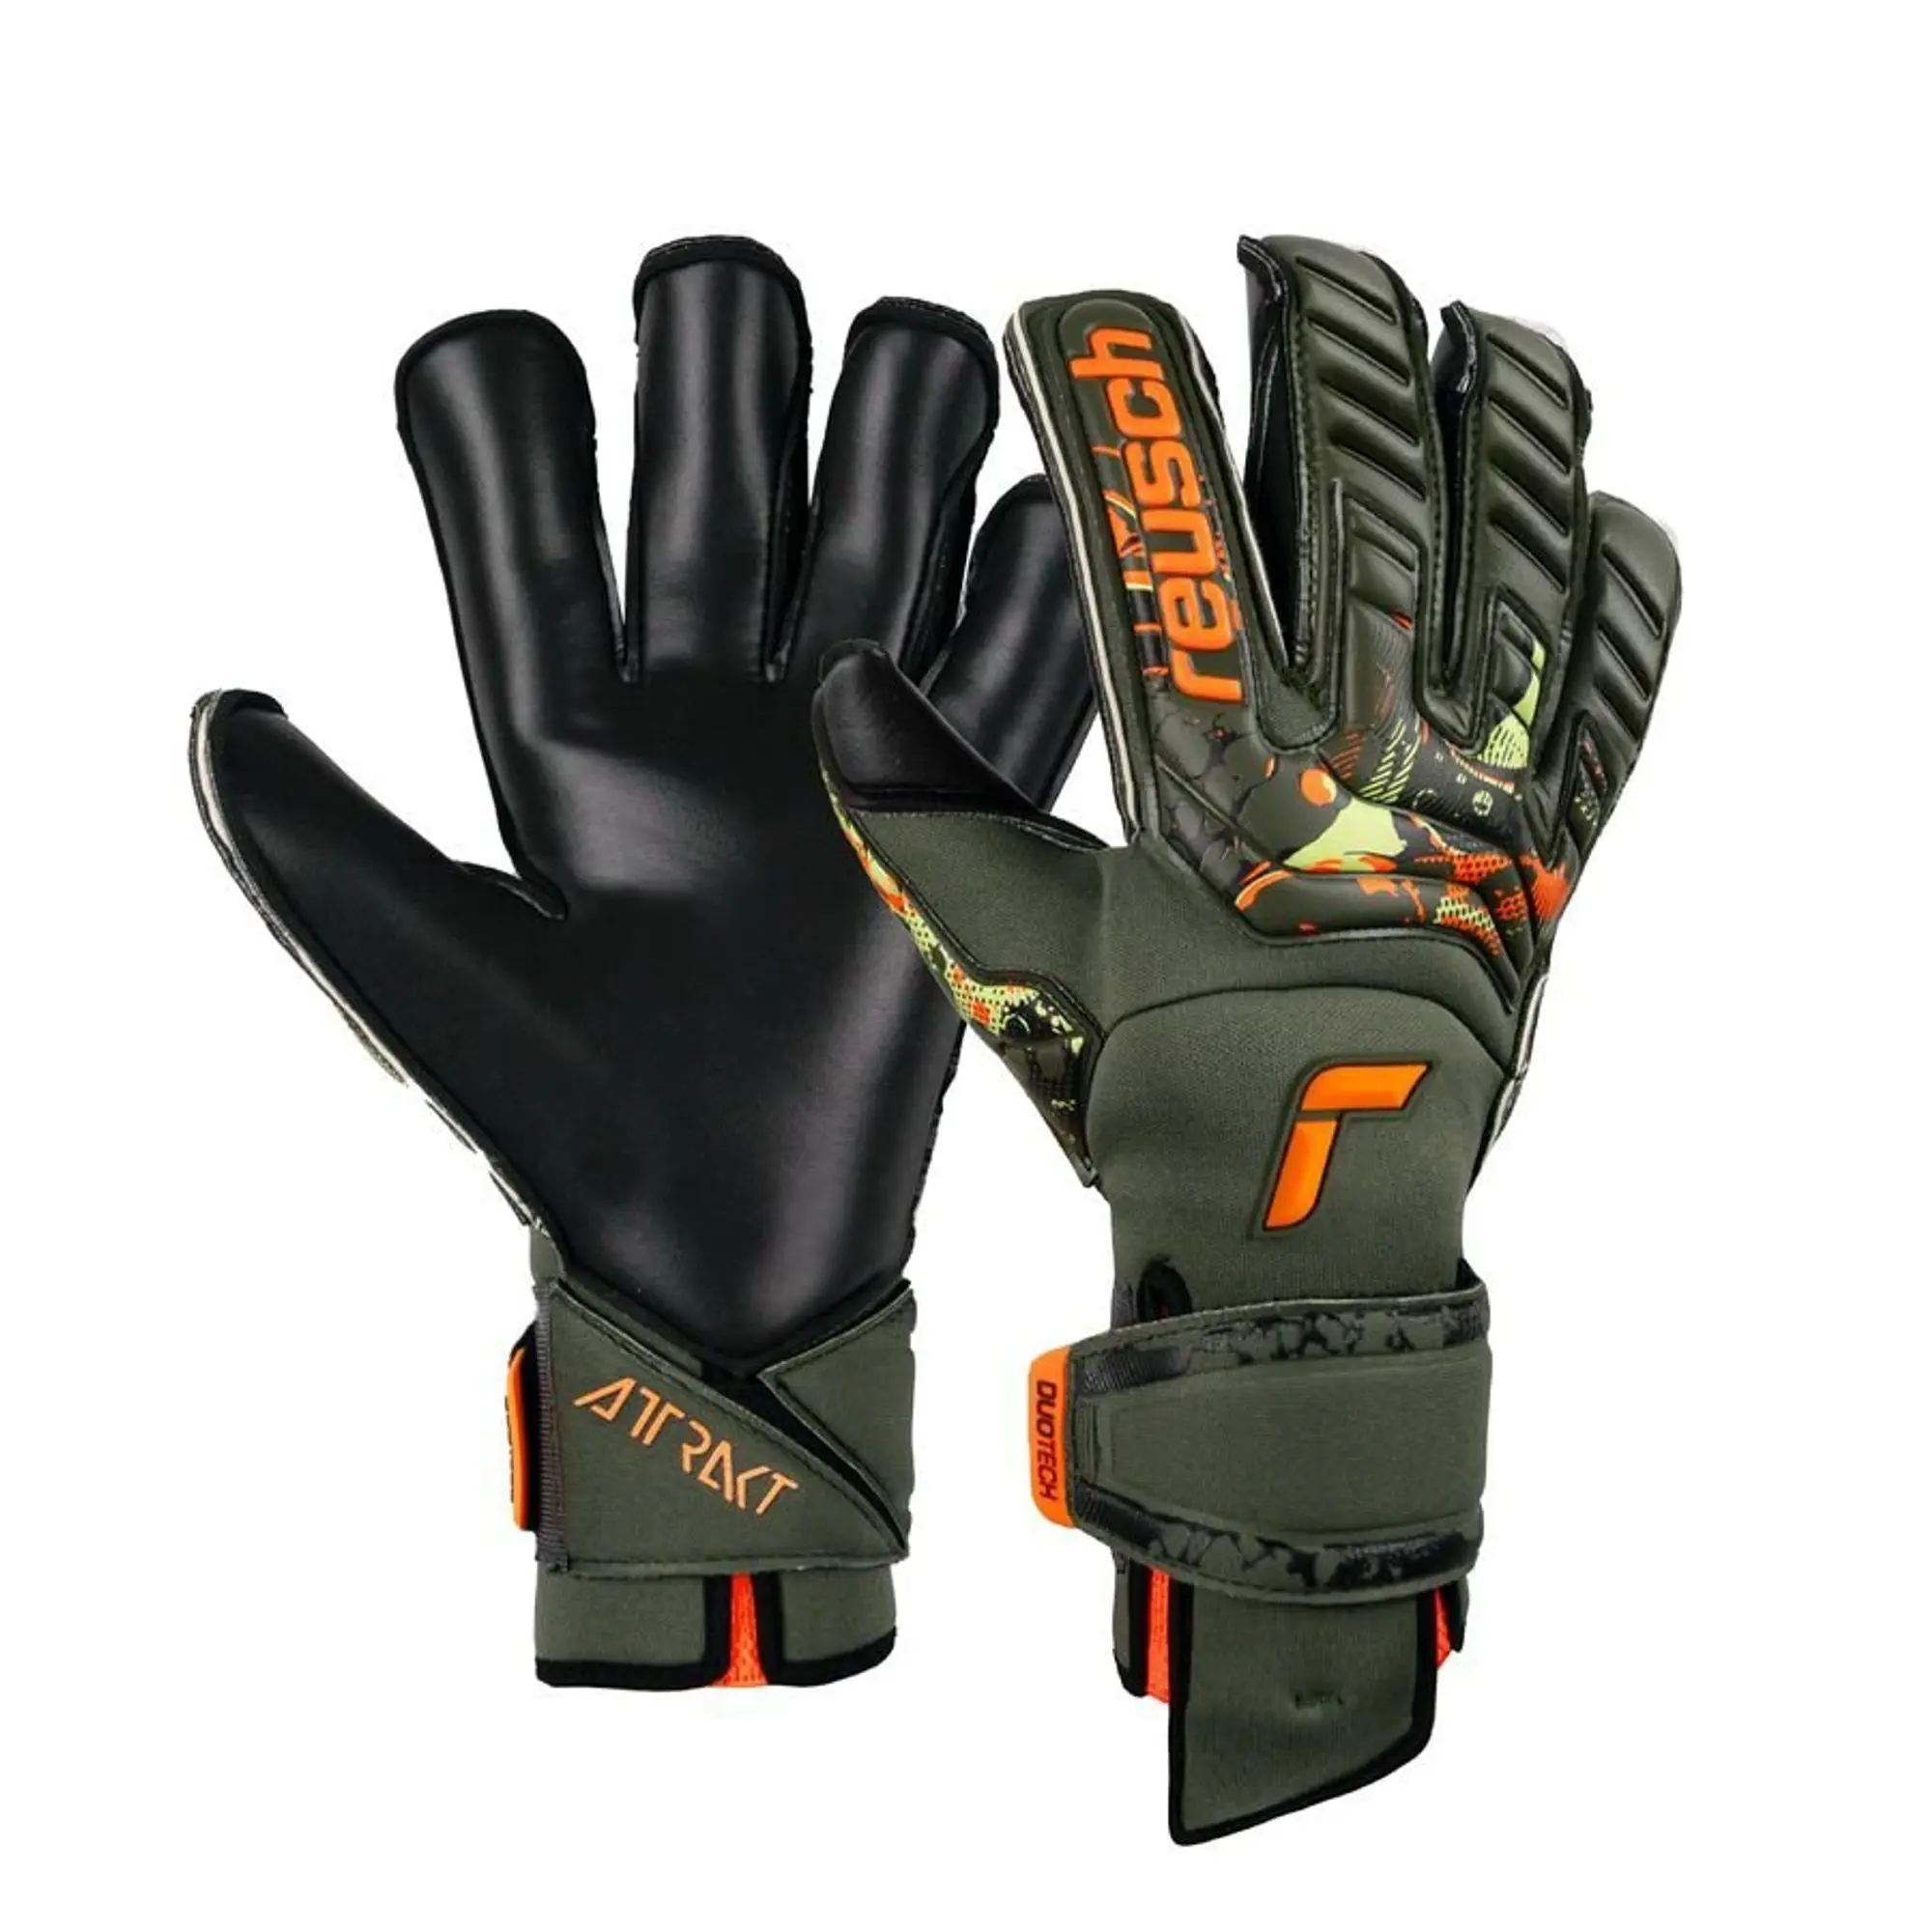 Reusch Goalkeeper Gloves Attrakt Duo Evolution Adaptiveflex Desert Bloom - Green